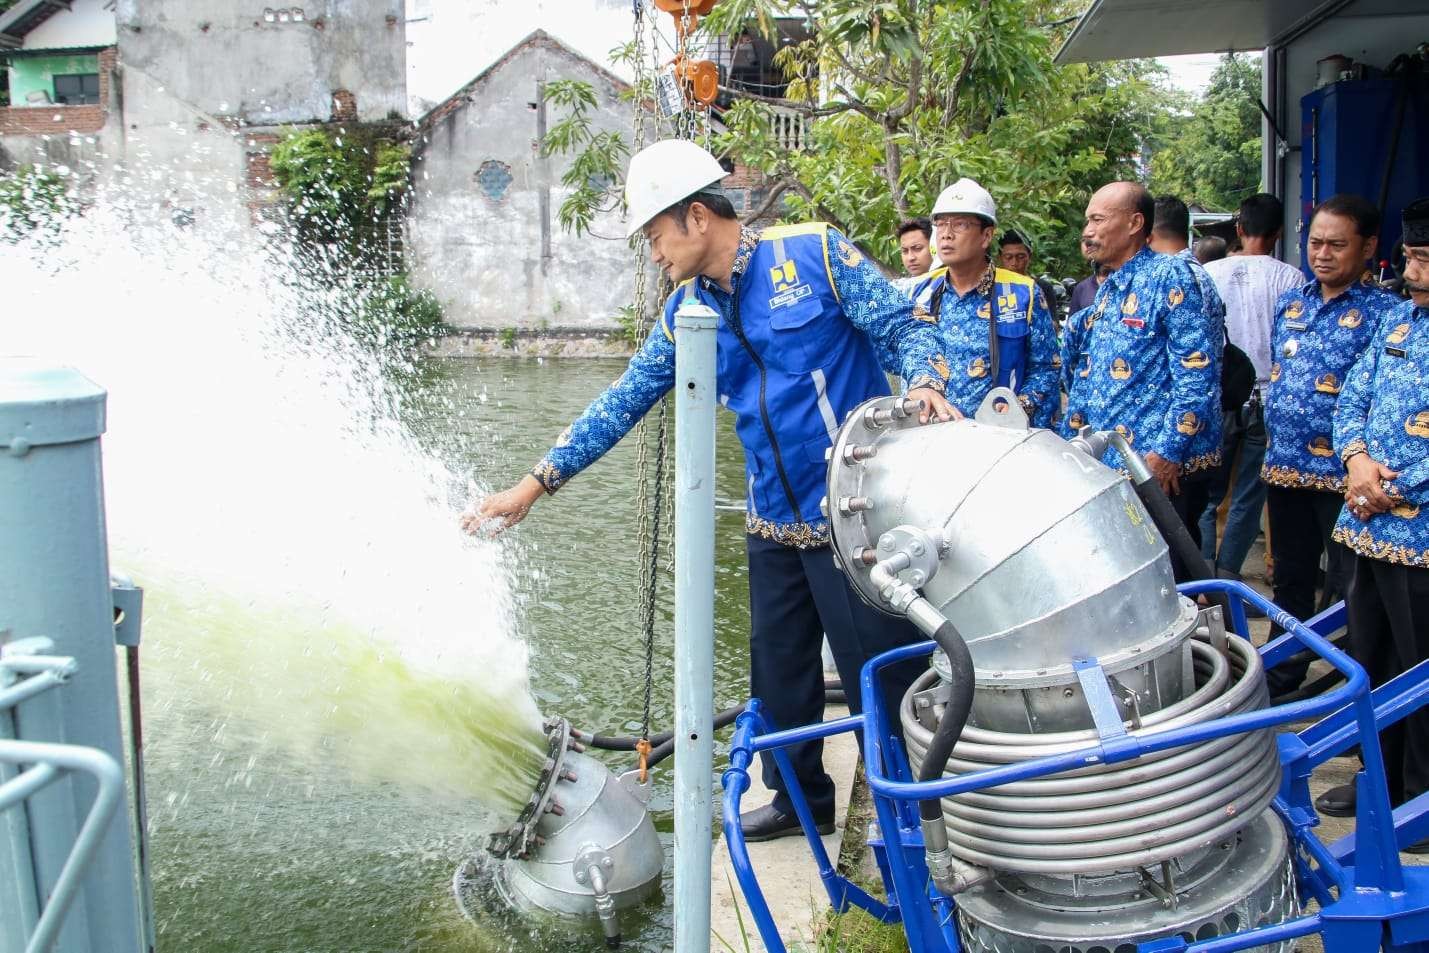 Bupati Lamongan, Yuhronur Efendi meninjau uji coba pompa mobile di Babat. (Foto: Dokumentasi Dinas Kominfo Lamongan)